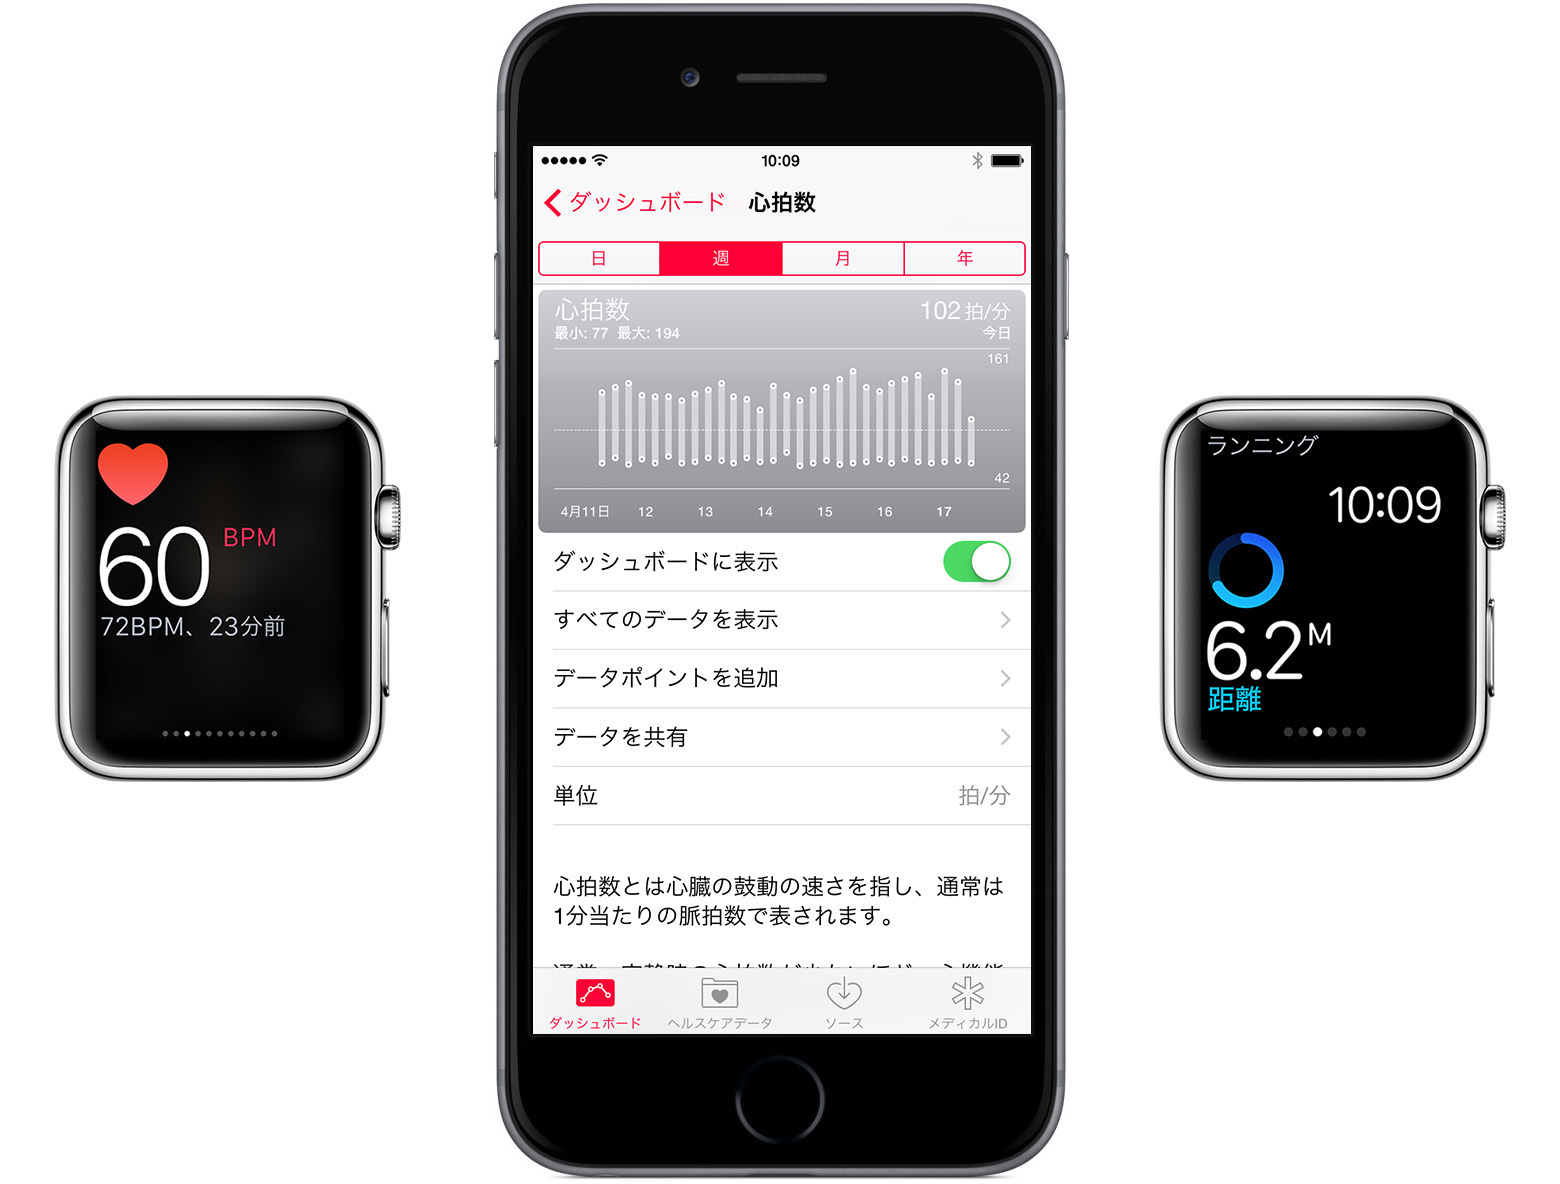 ｢Apple Watch｣で｢Watch OS 1.0.1｣適用後に心拍数が10分おきに測定されない件、バグではなくApple側の仕様変更だった事が判明